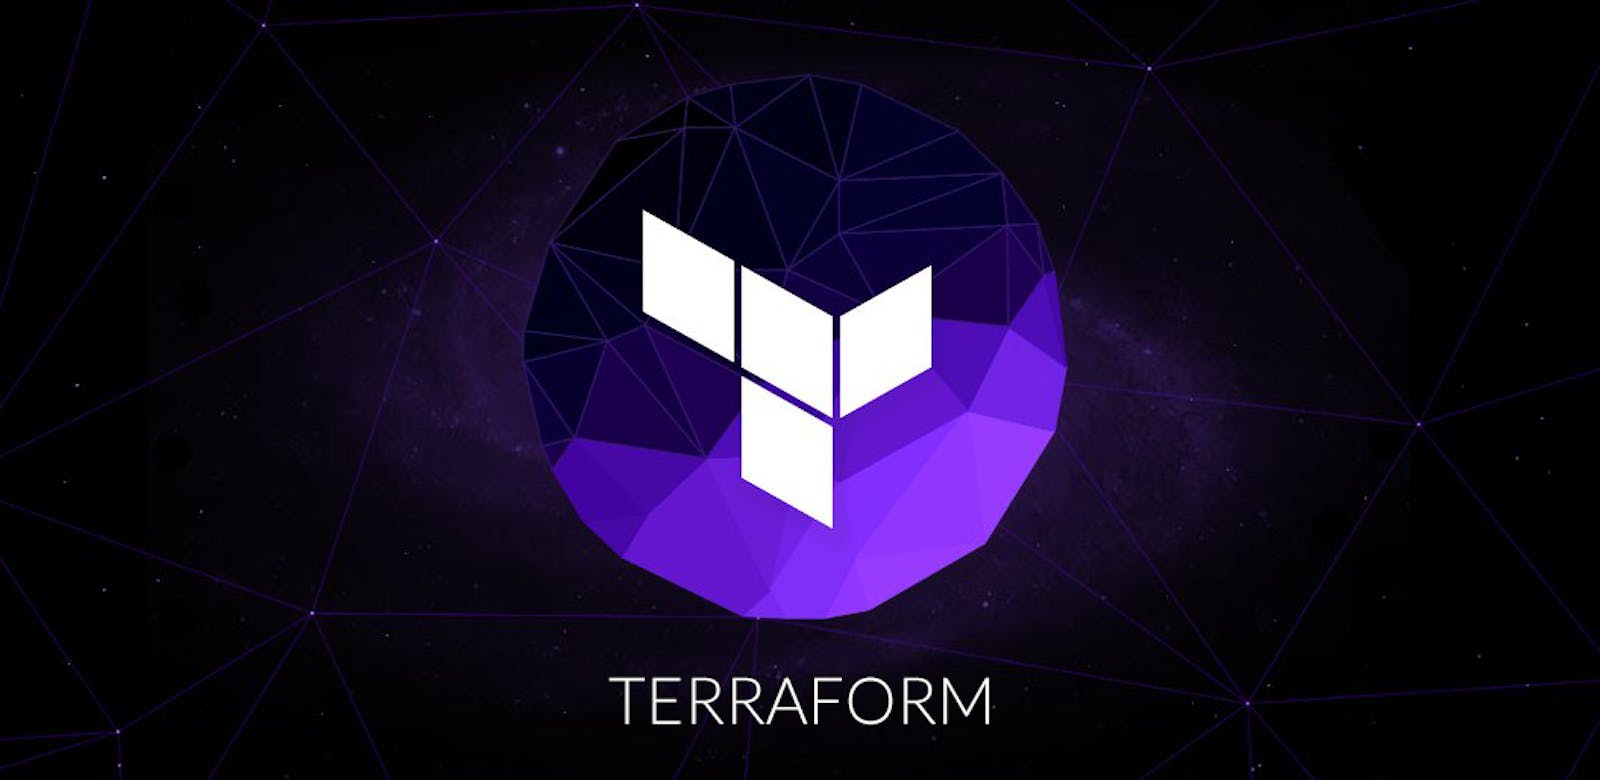 Deep Dive into Terraform - P3 
(Terraform State File Management)